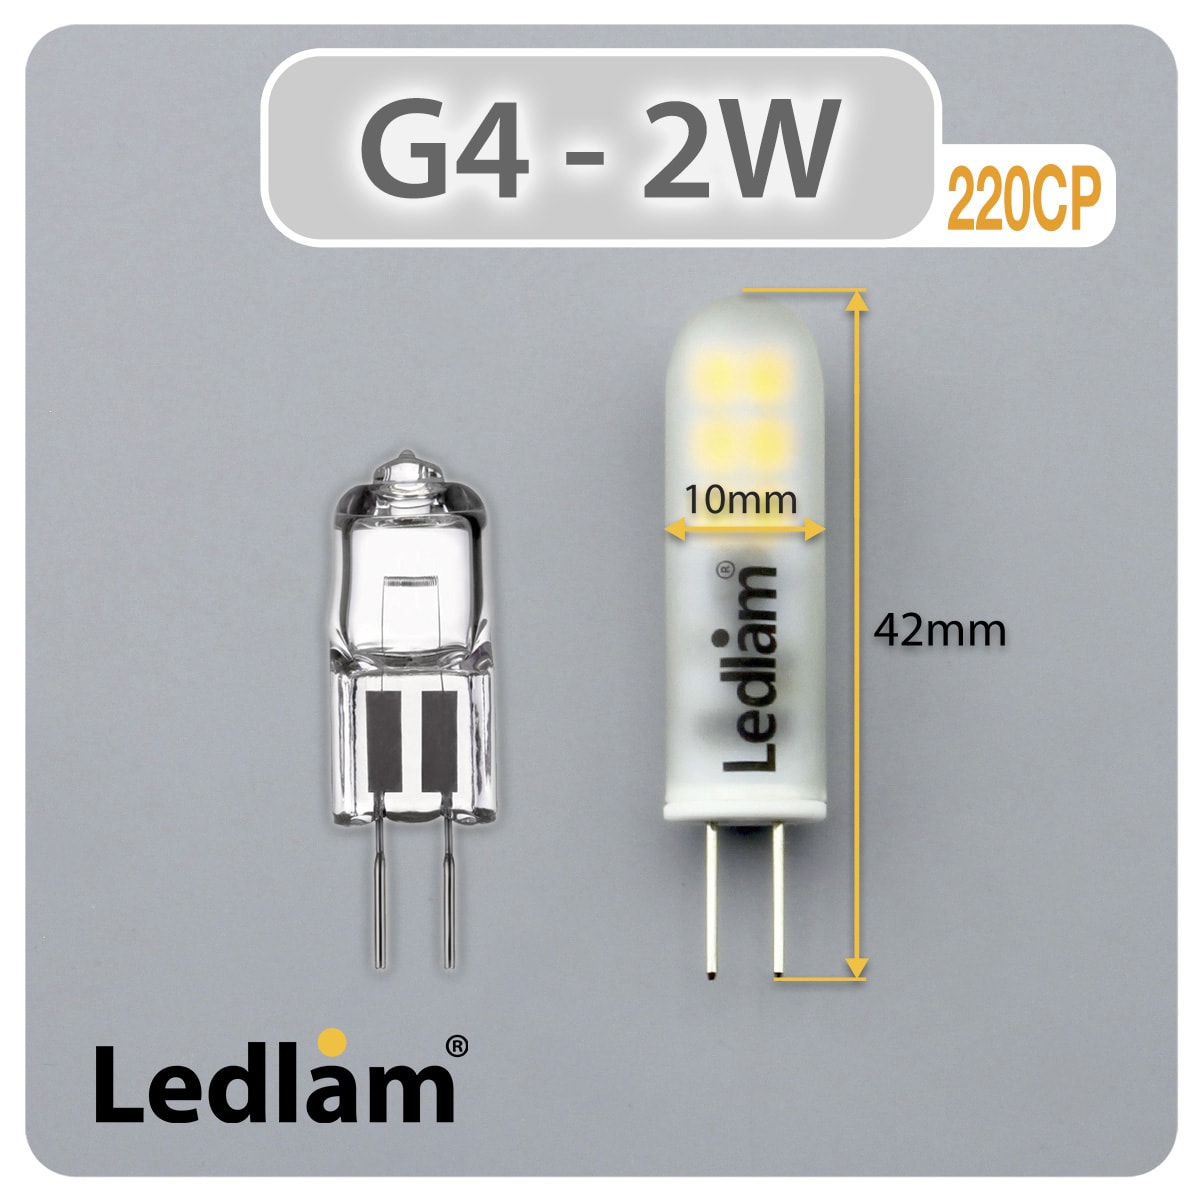 G4 220CP 2W LED Capsule Bulb - Ledlam Lighting